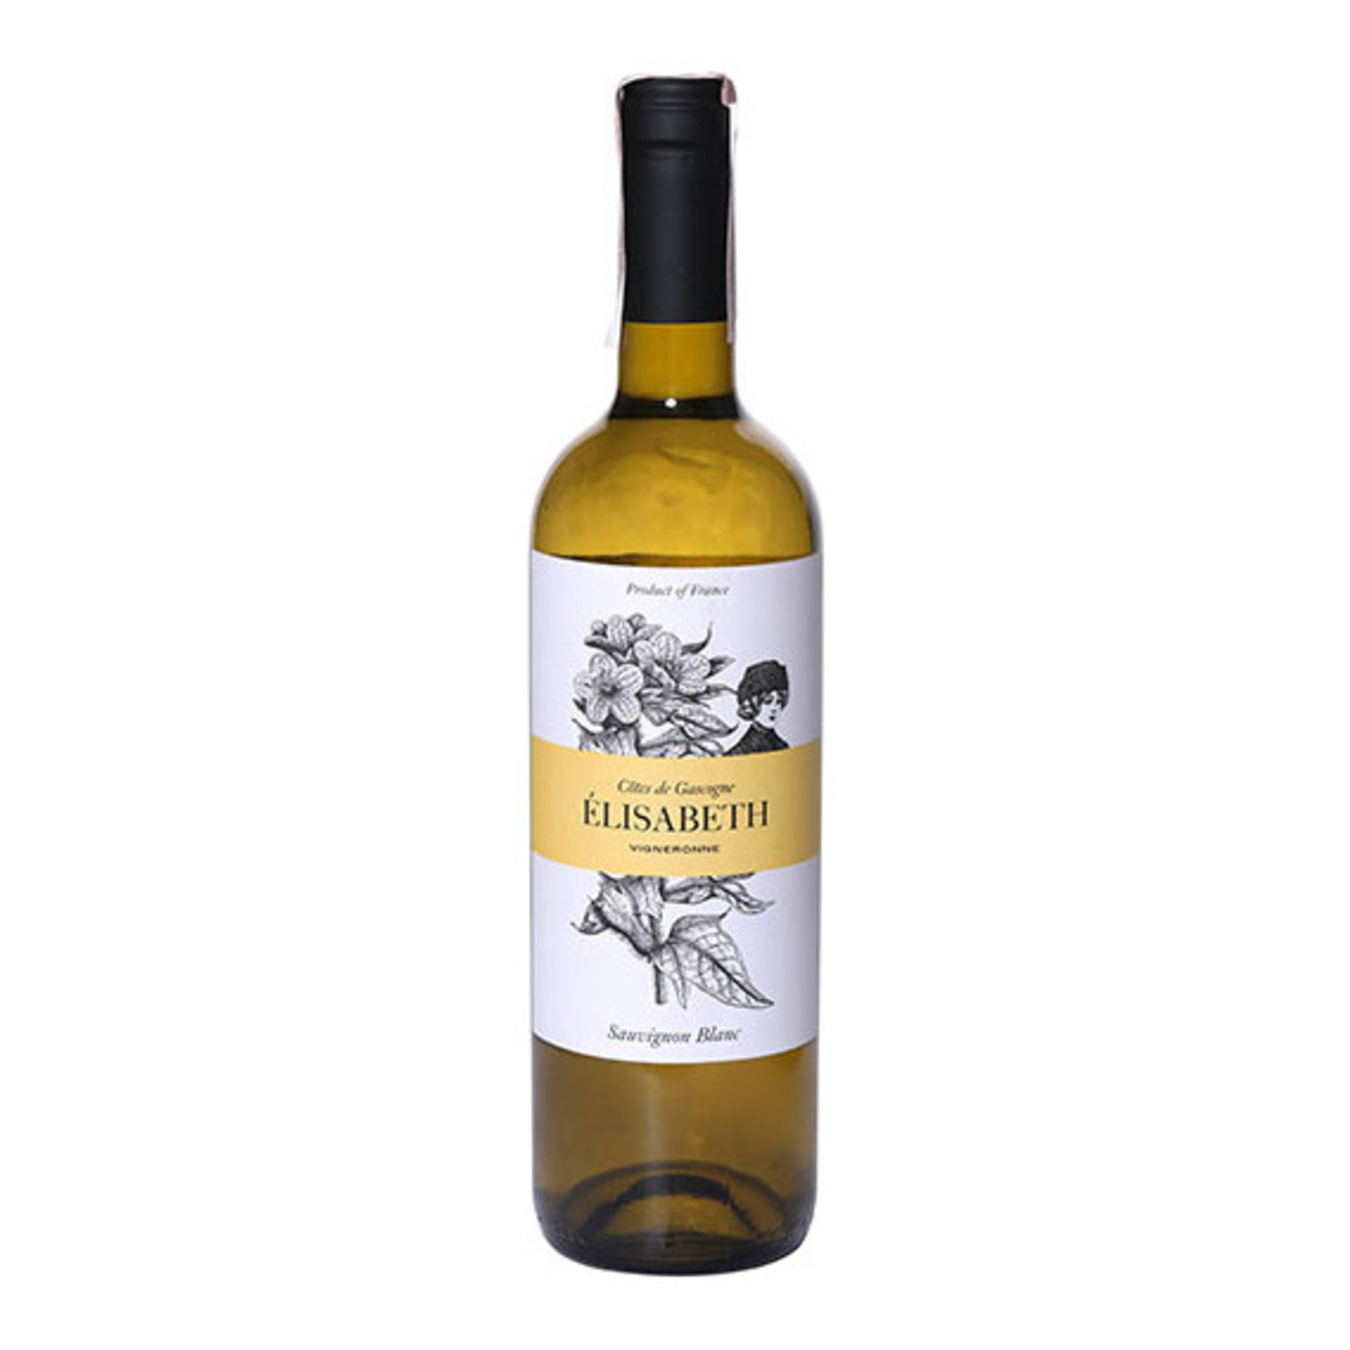 Вино Elisabeth Sauvignon Blanc Cotes de Gascogne біле напівсухе 11% 0,75л